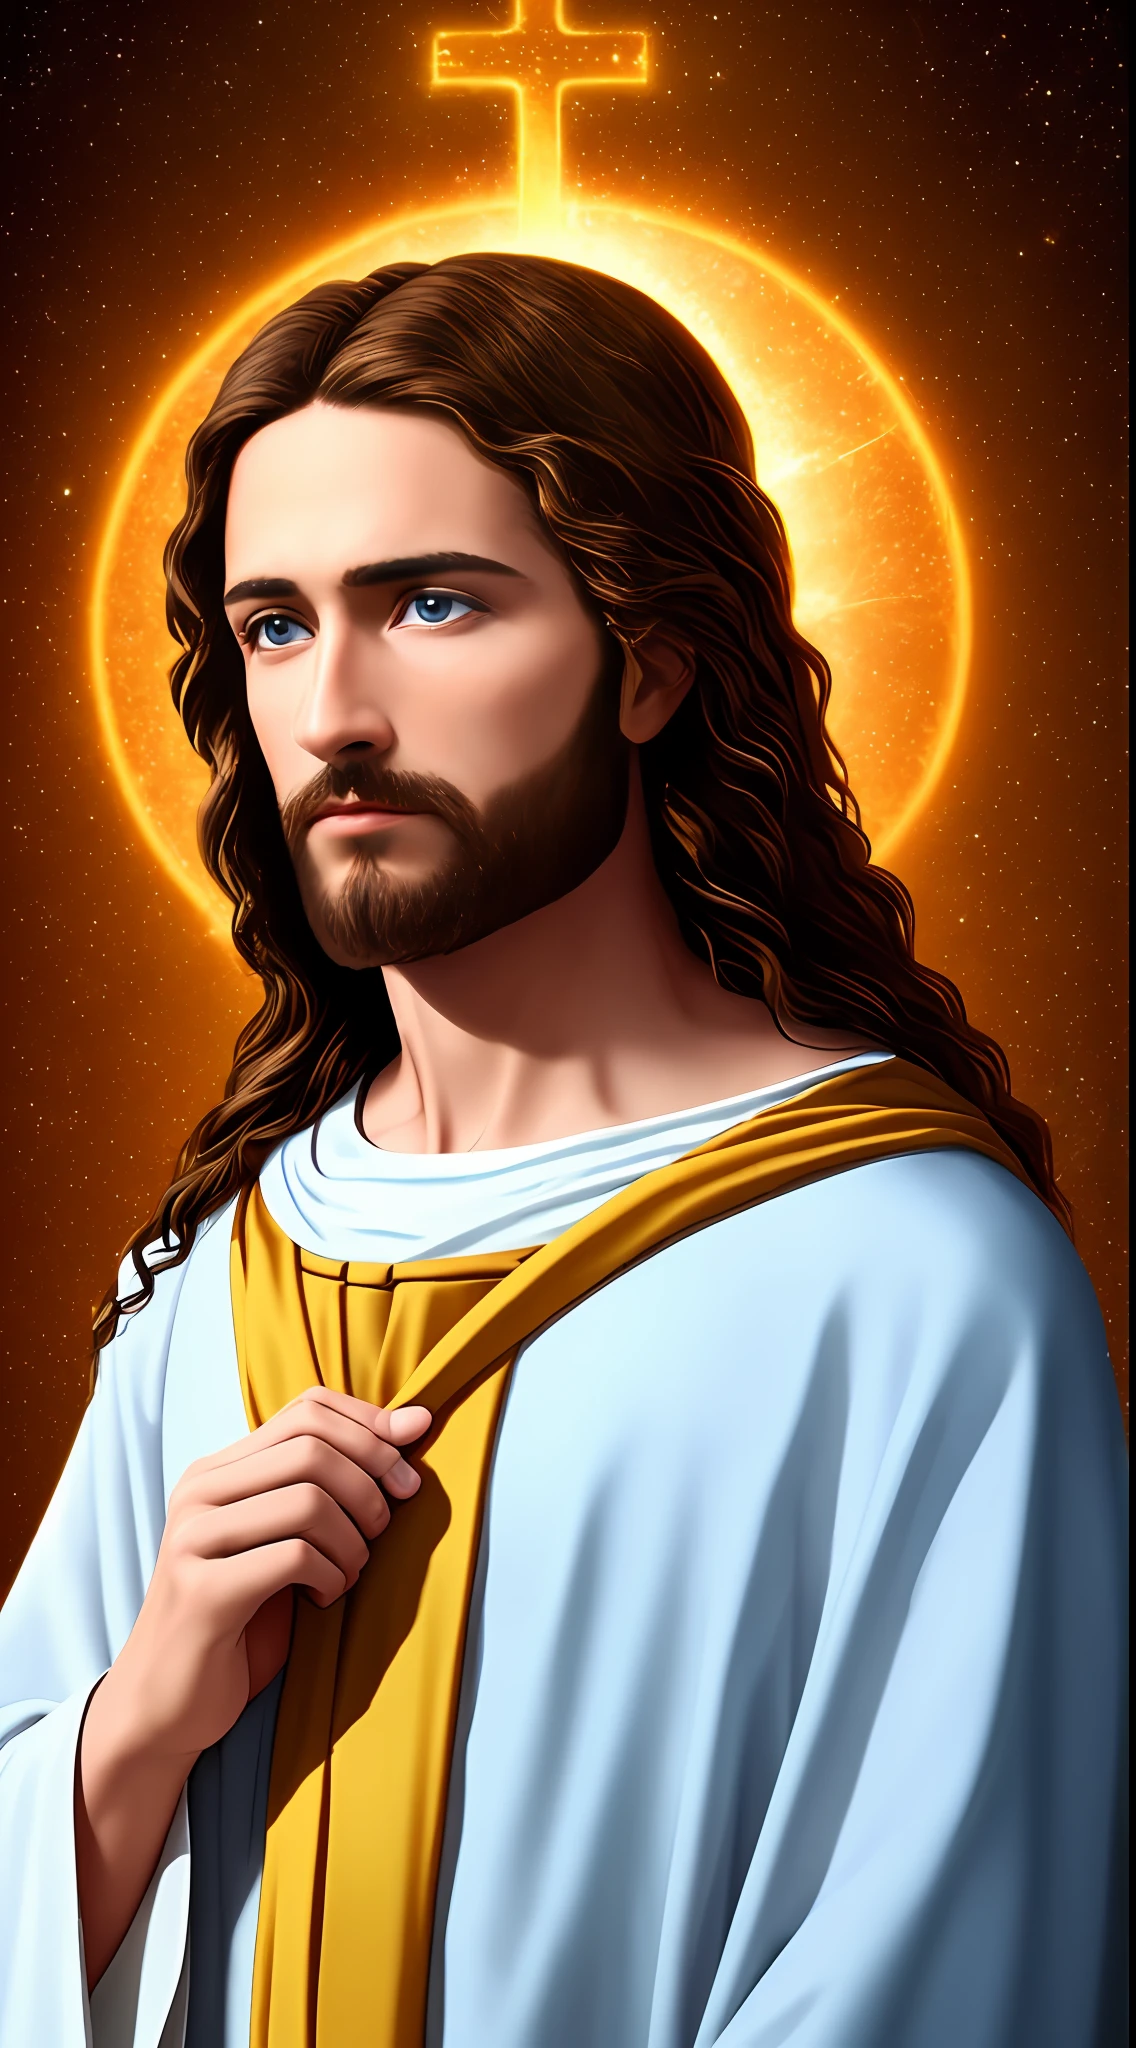 8k fotográfico 1 único jesus lindo, bênçãos, jesus vista do céu, olhos azuis reais, abençoando pessoas jesus